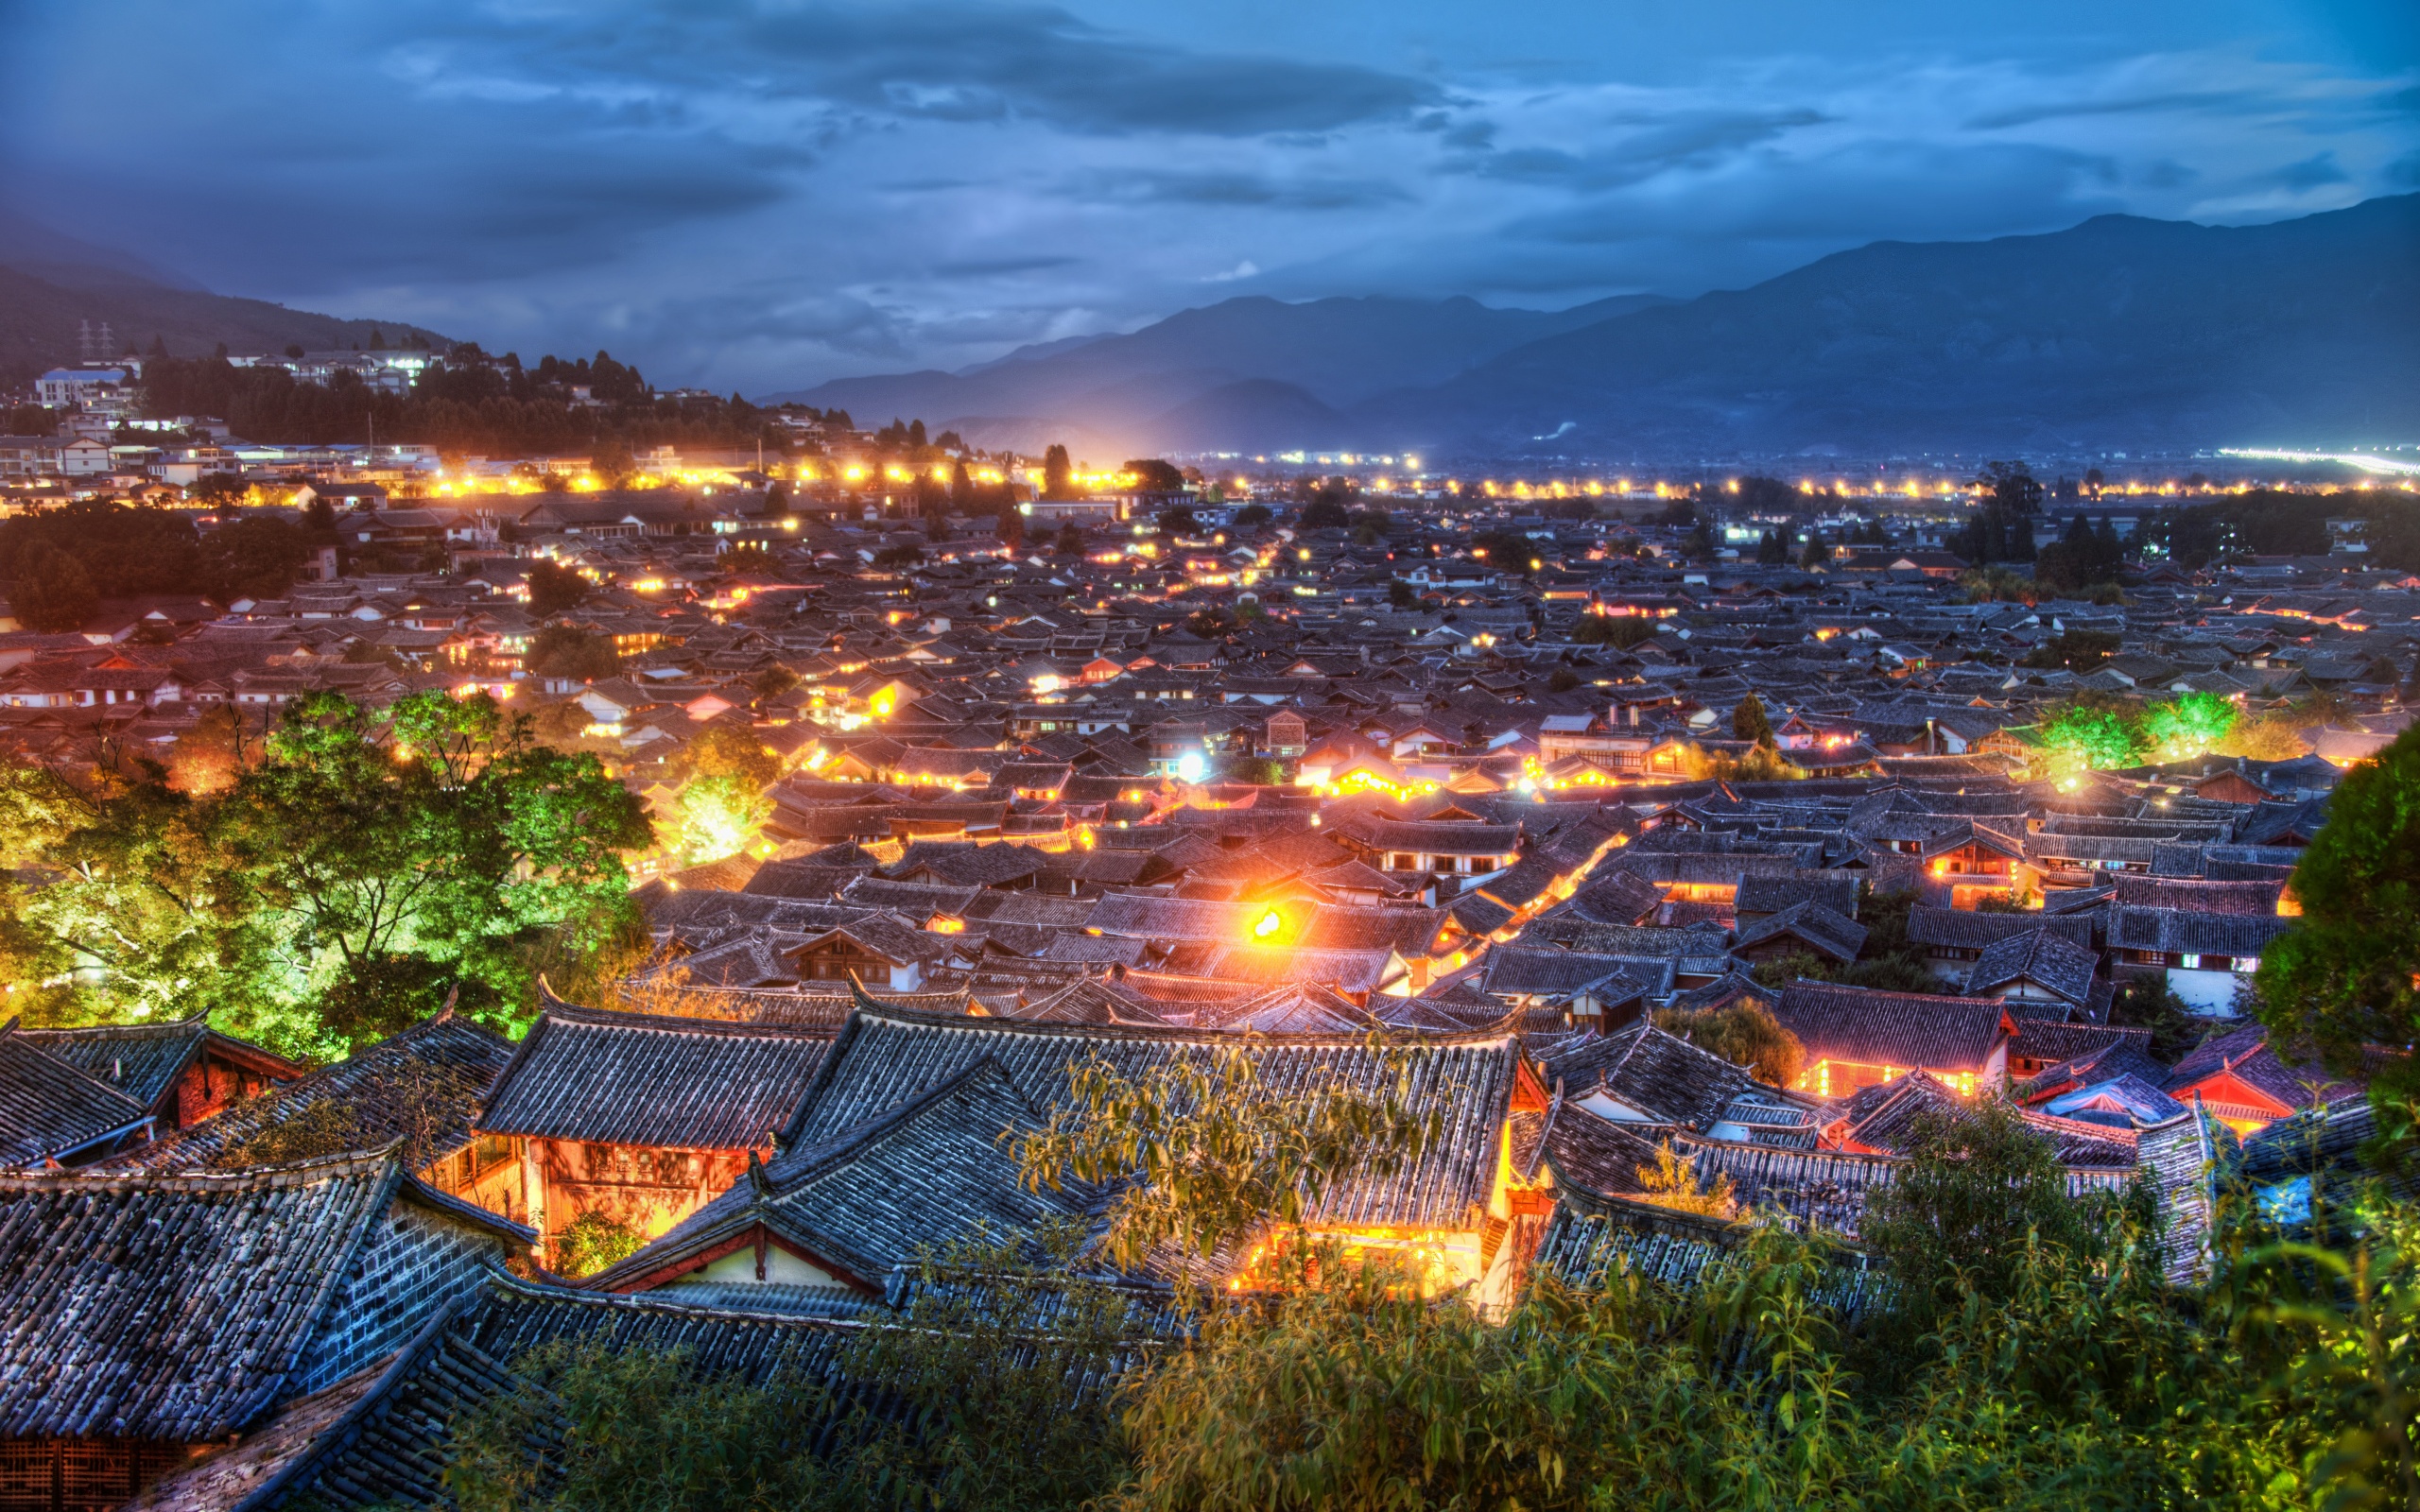 Old Town Of Lijiang - China